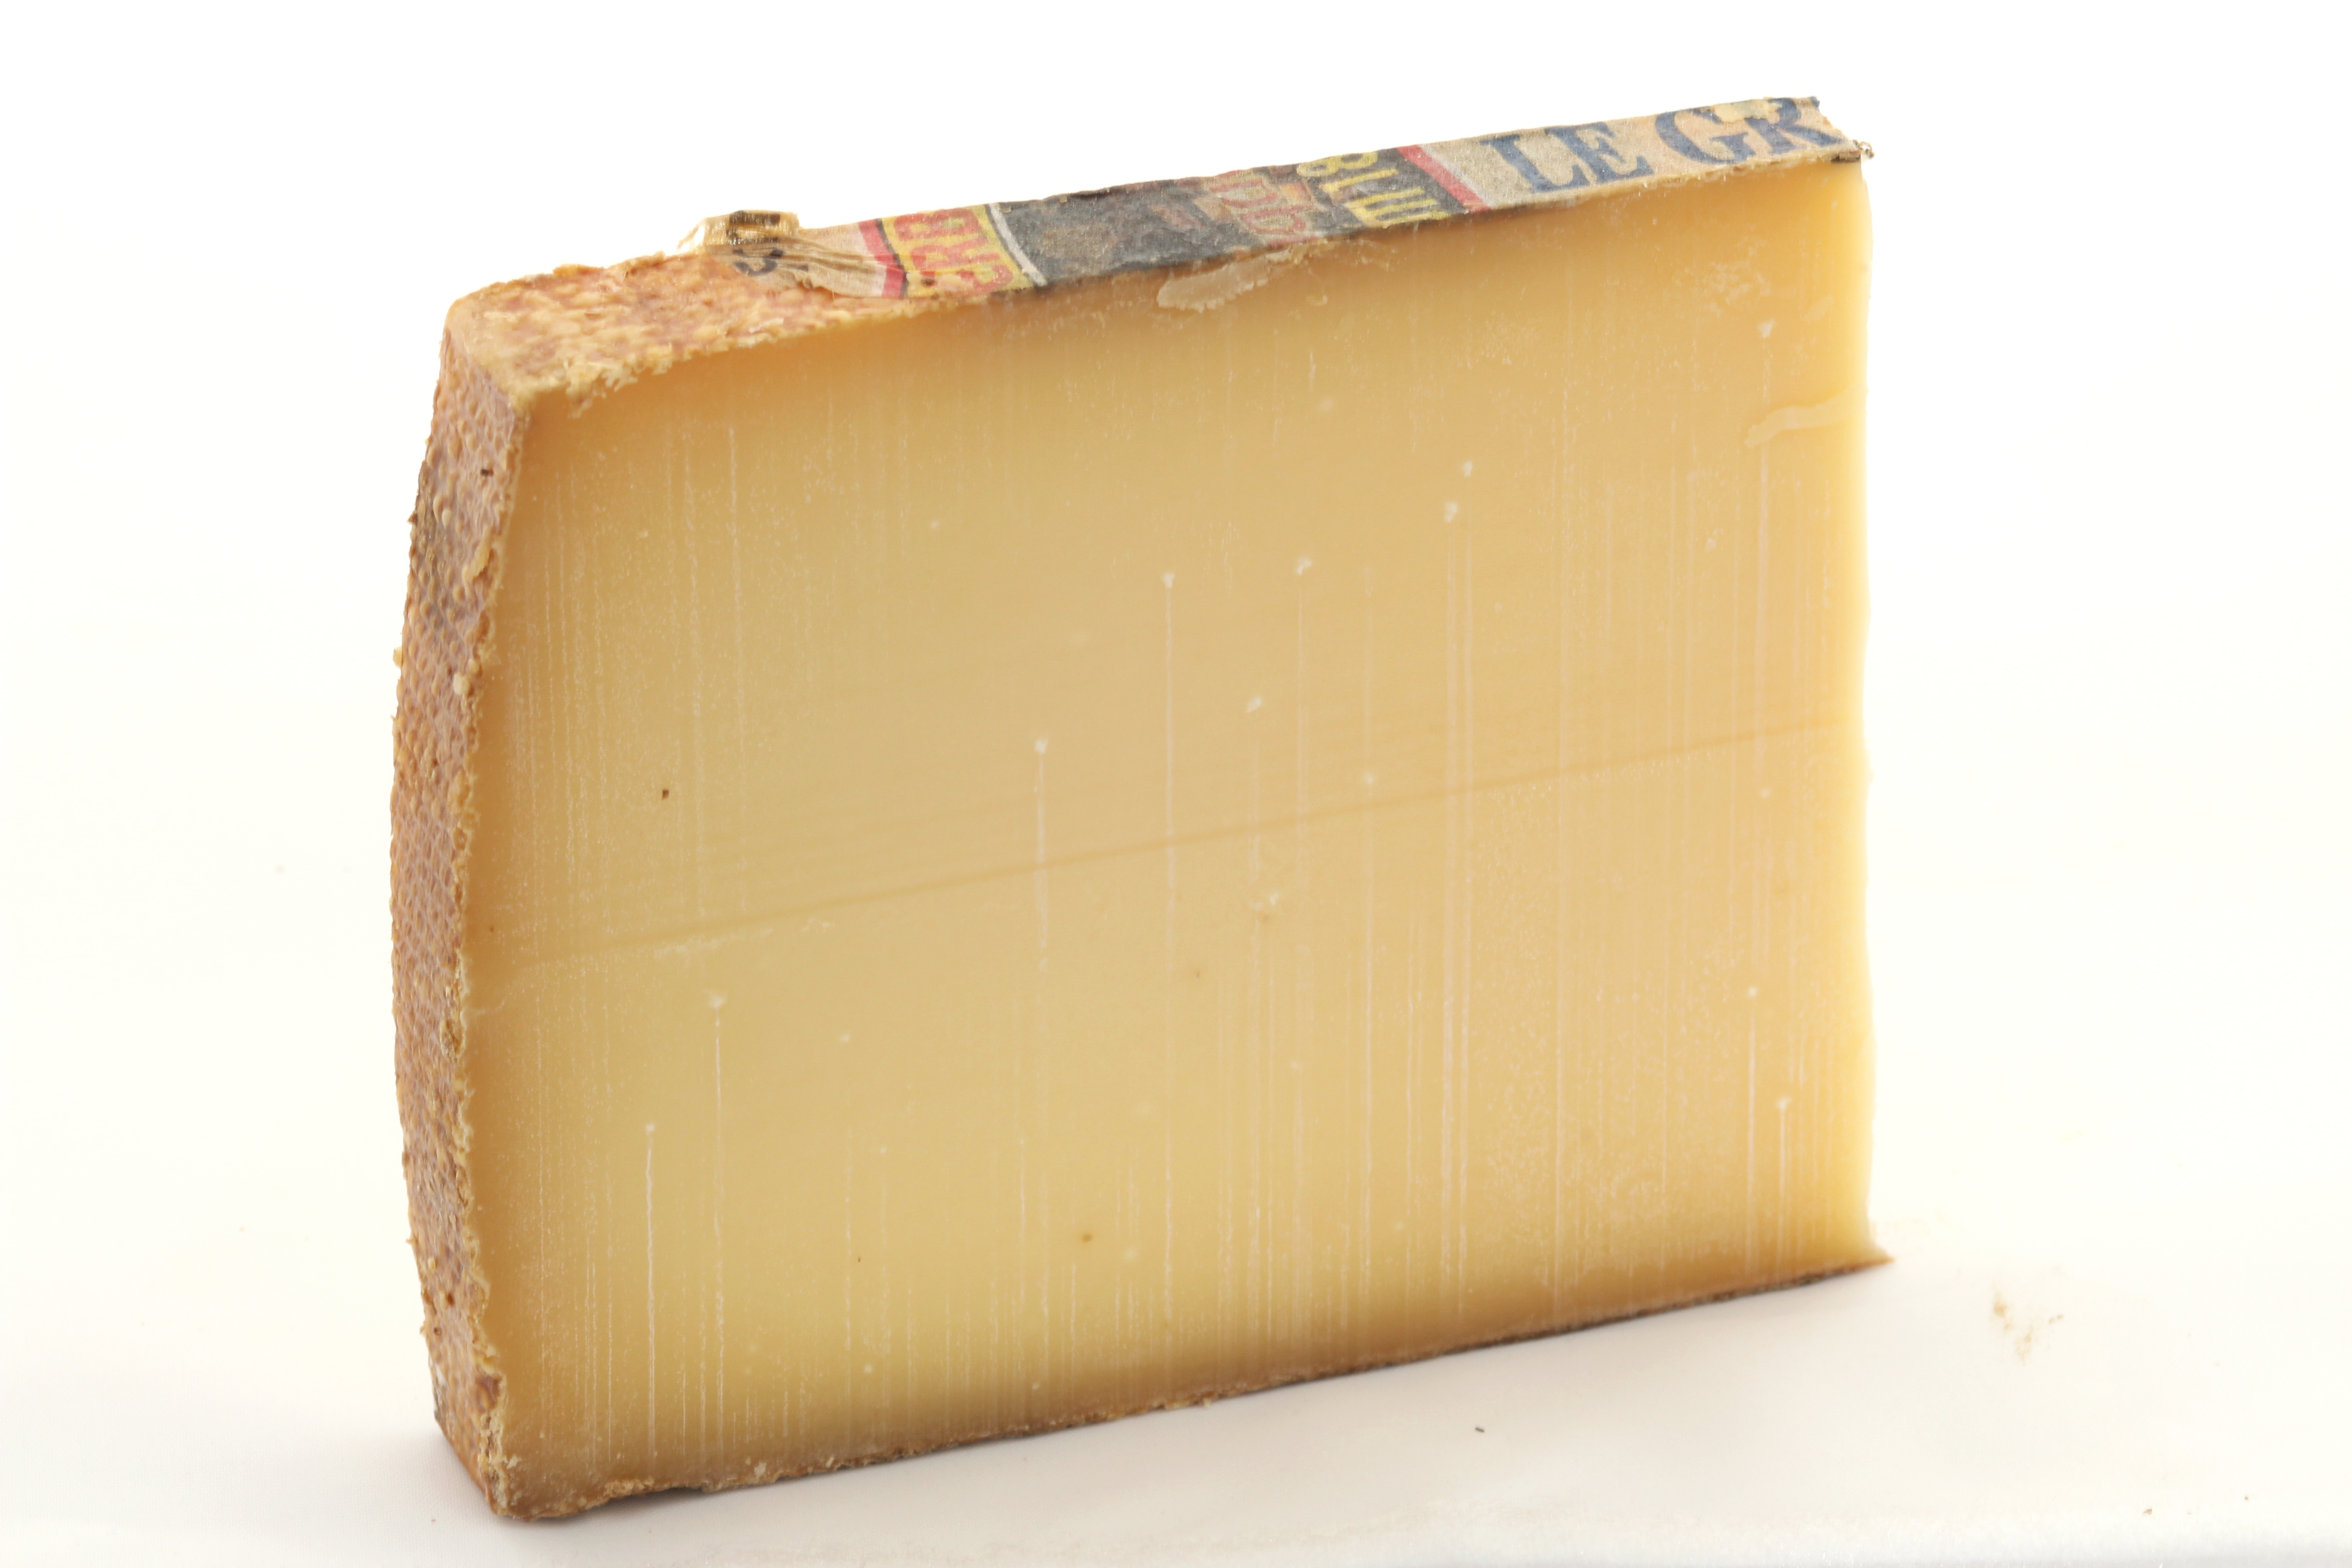 Gruyère cheese - Wikipedia